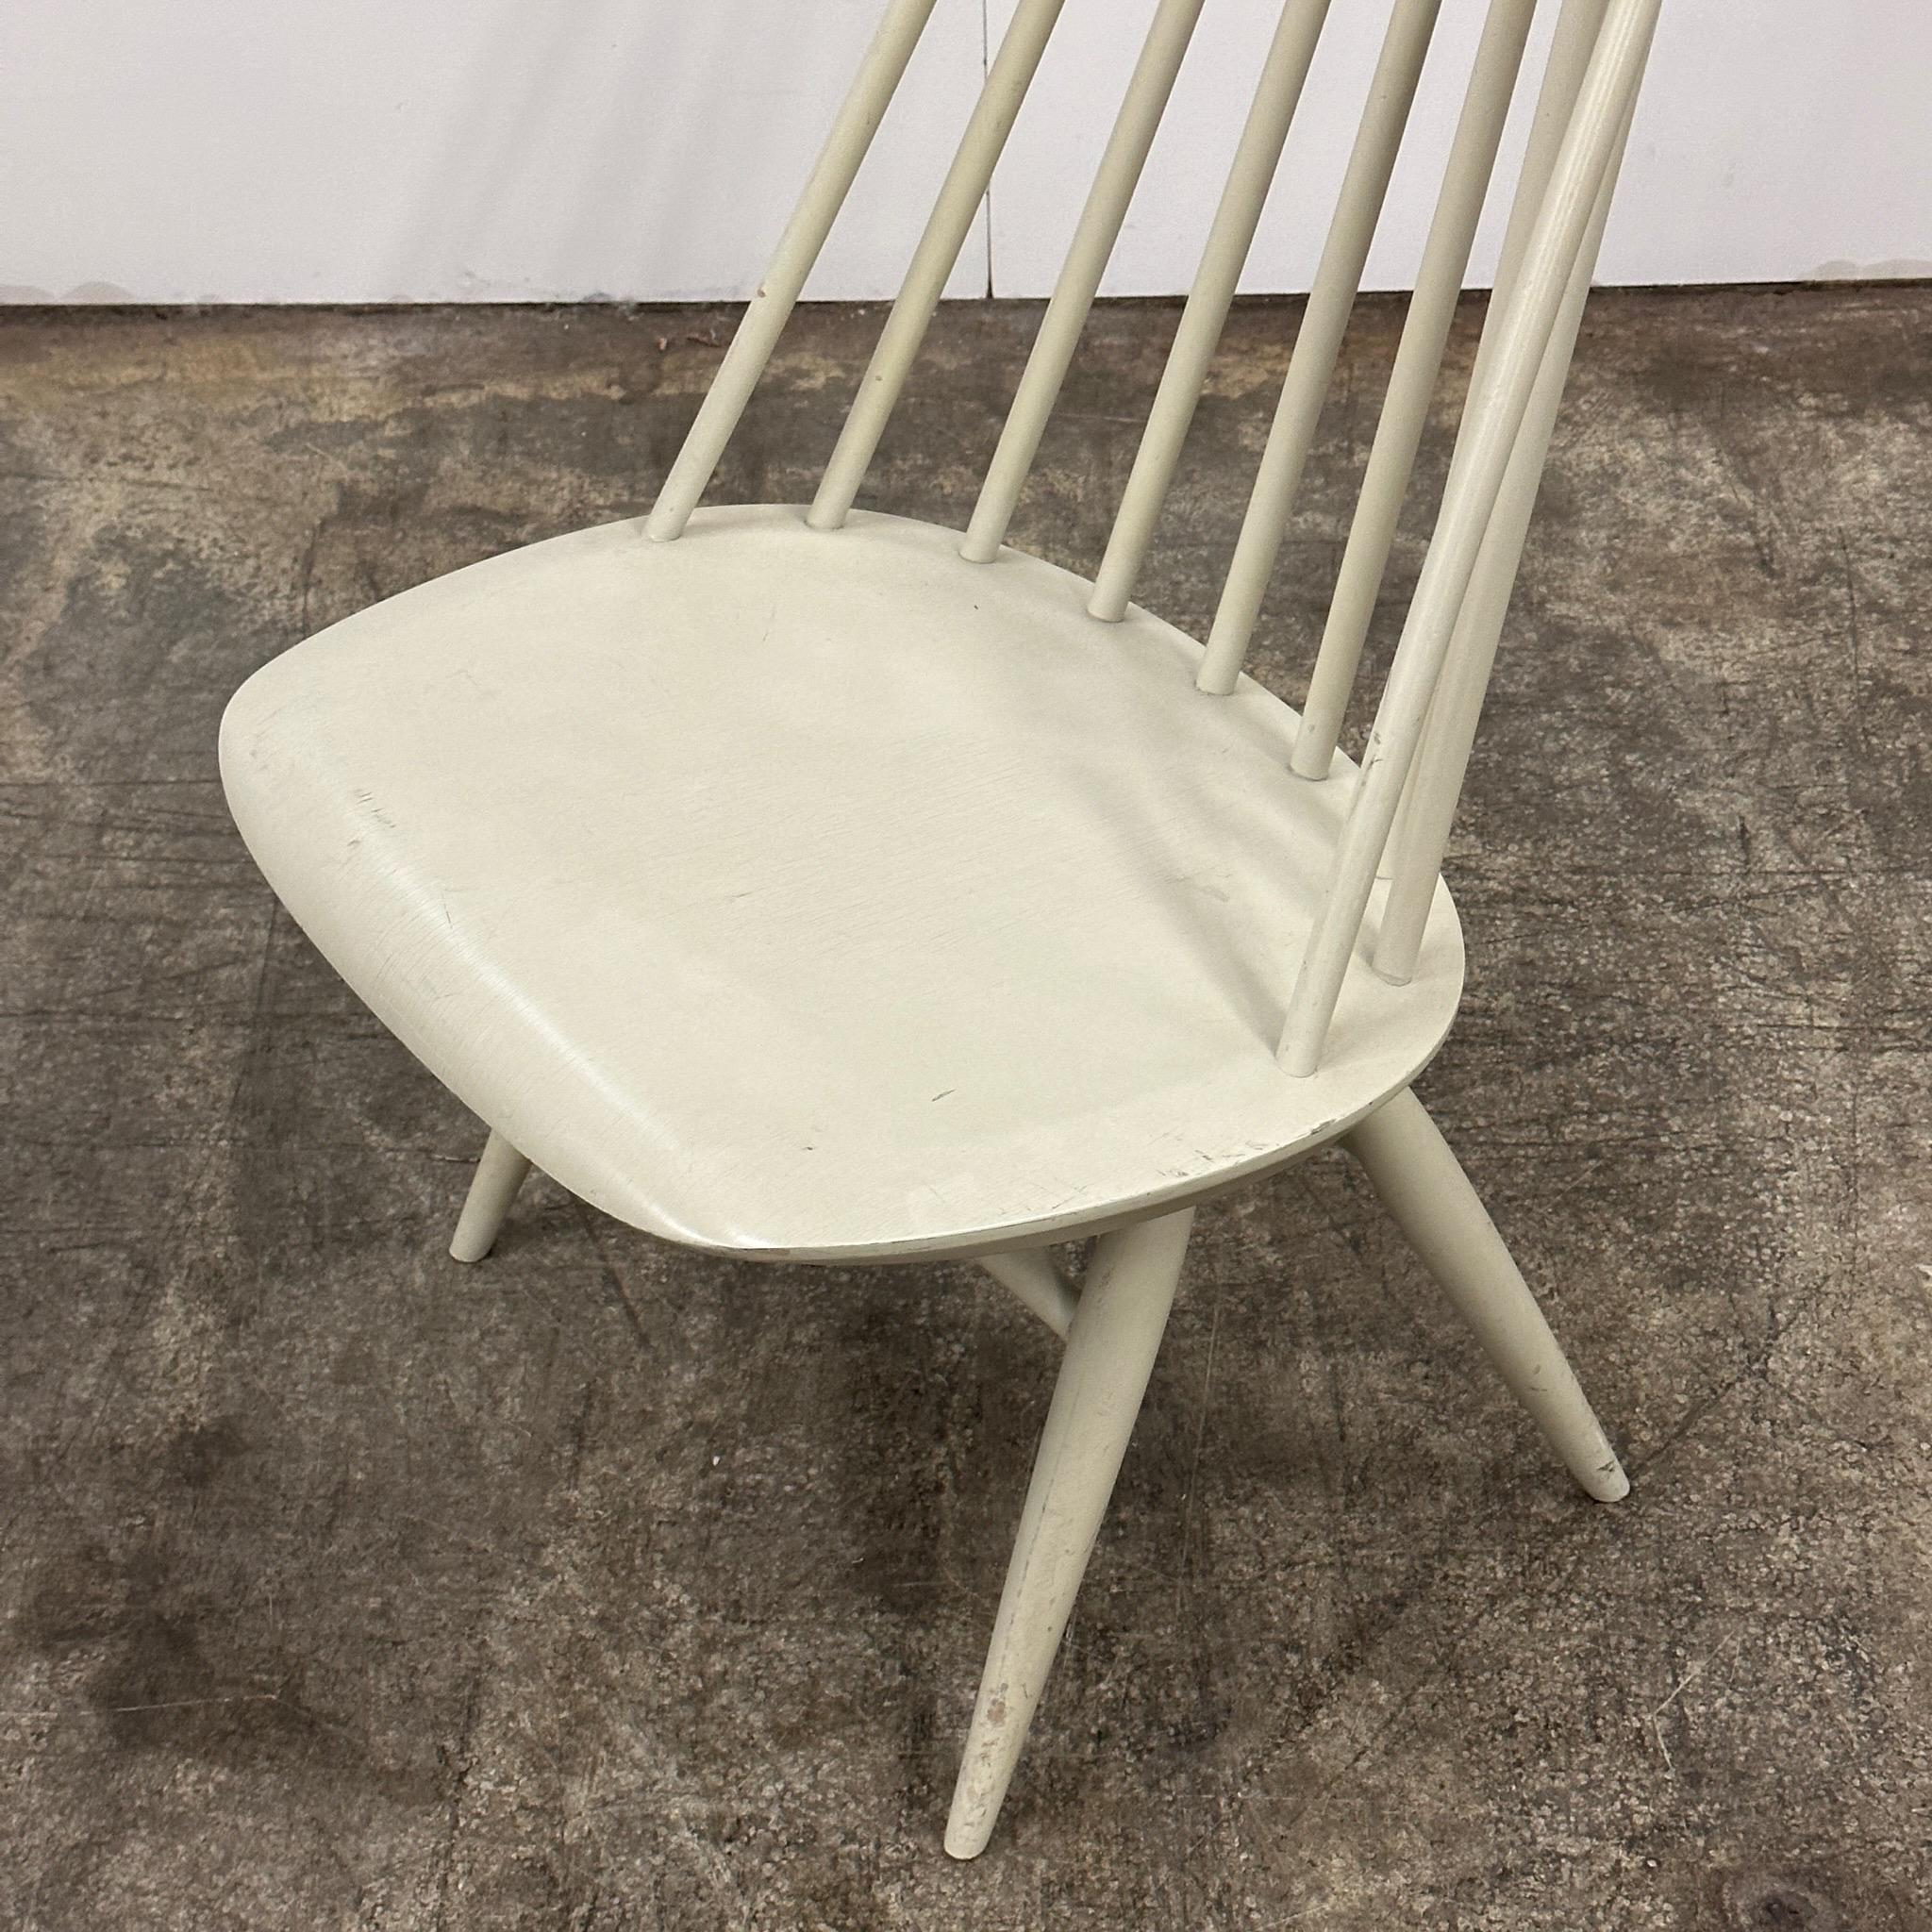 c. 1960s. Ikonischer, weiß lackierter, aber gealterter Mademoiselle-Stuhl. Tagged. Hergestellt in Schweden